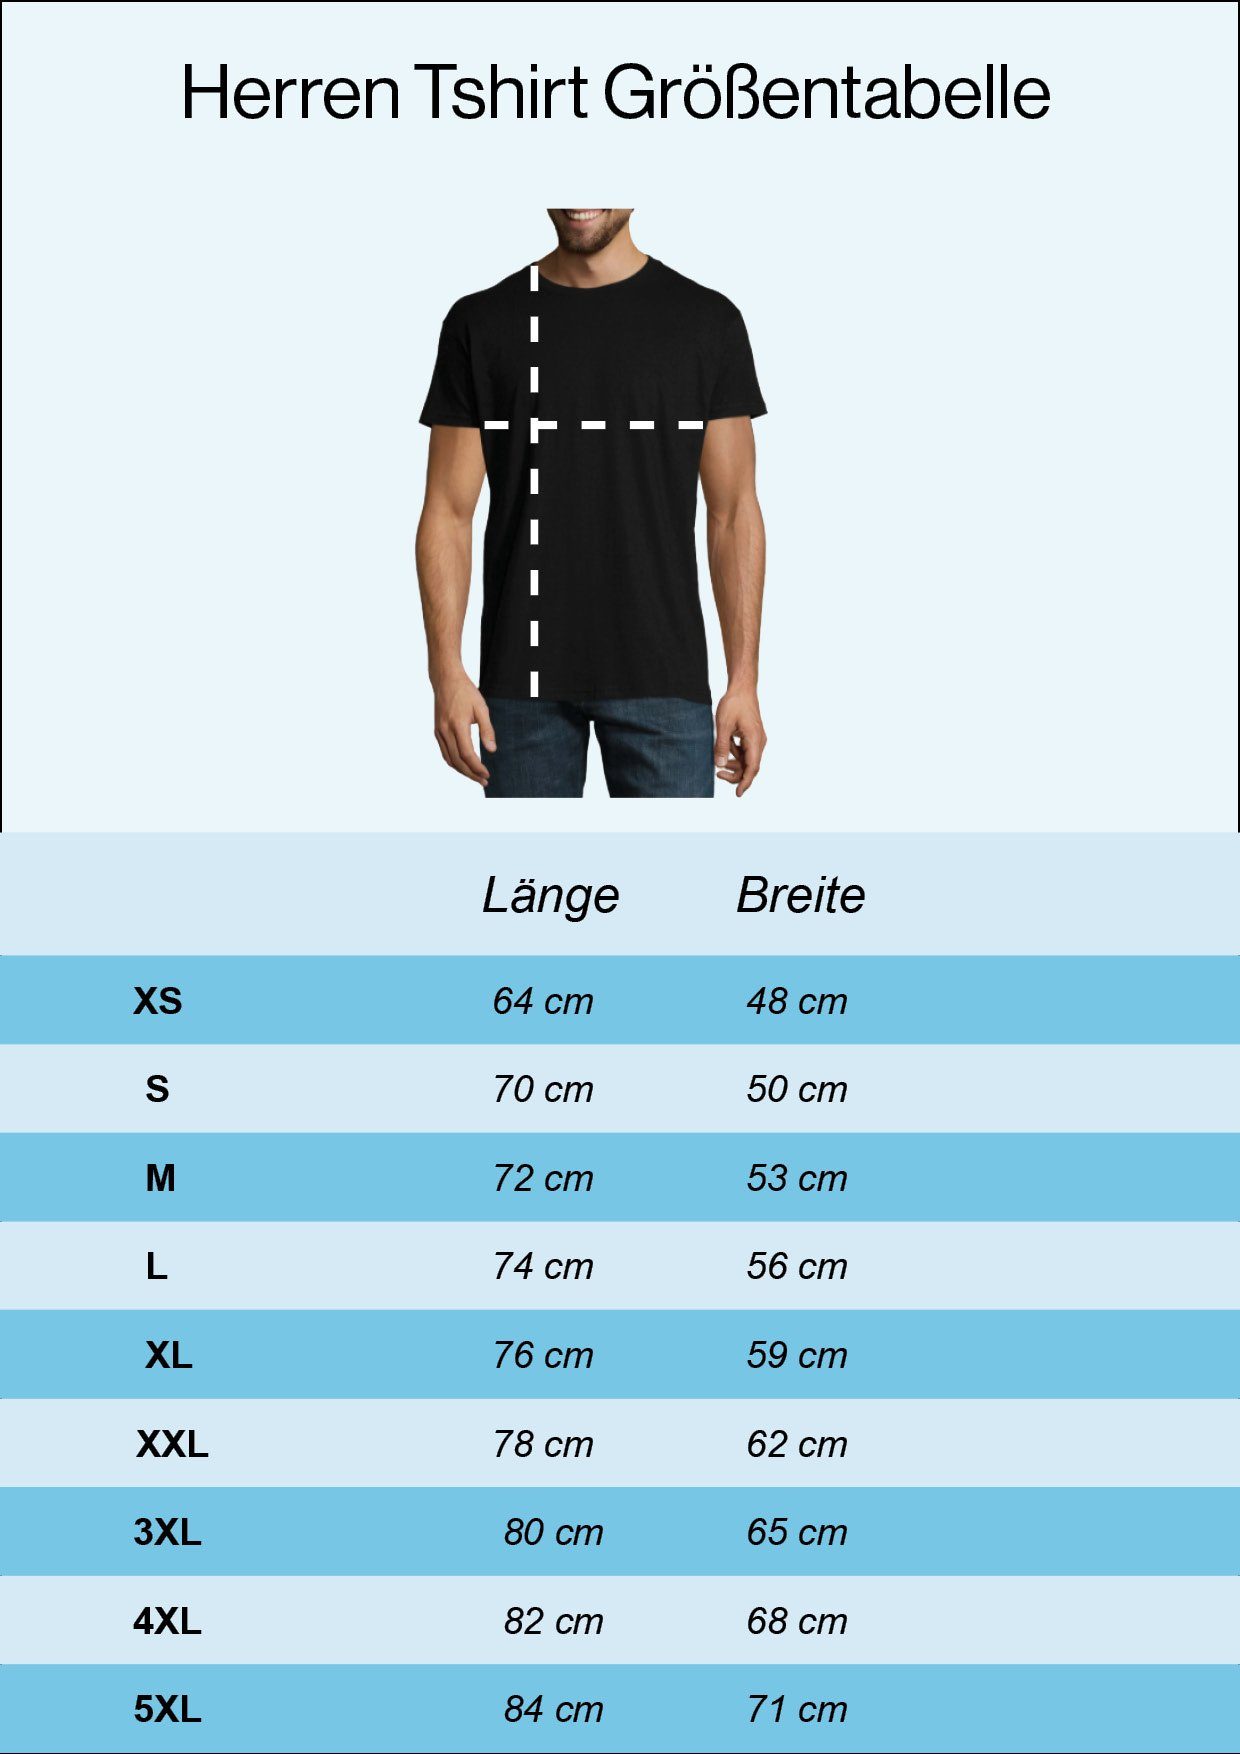 Frontprint Youth lustigem mit Designz T-Shirt Herren Gutaussehend Und 60 Navyblau Shirt